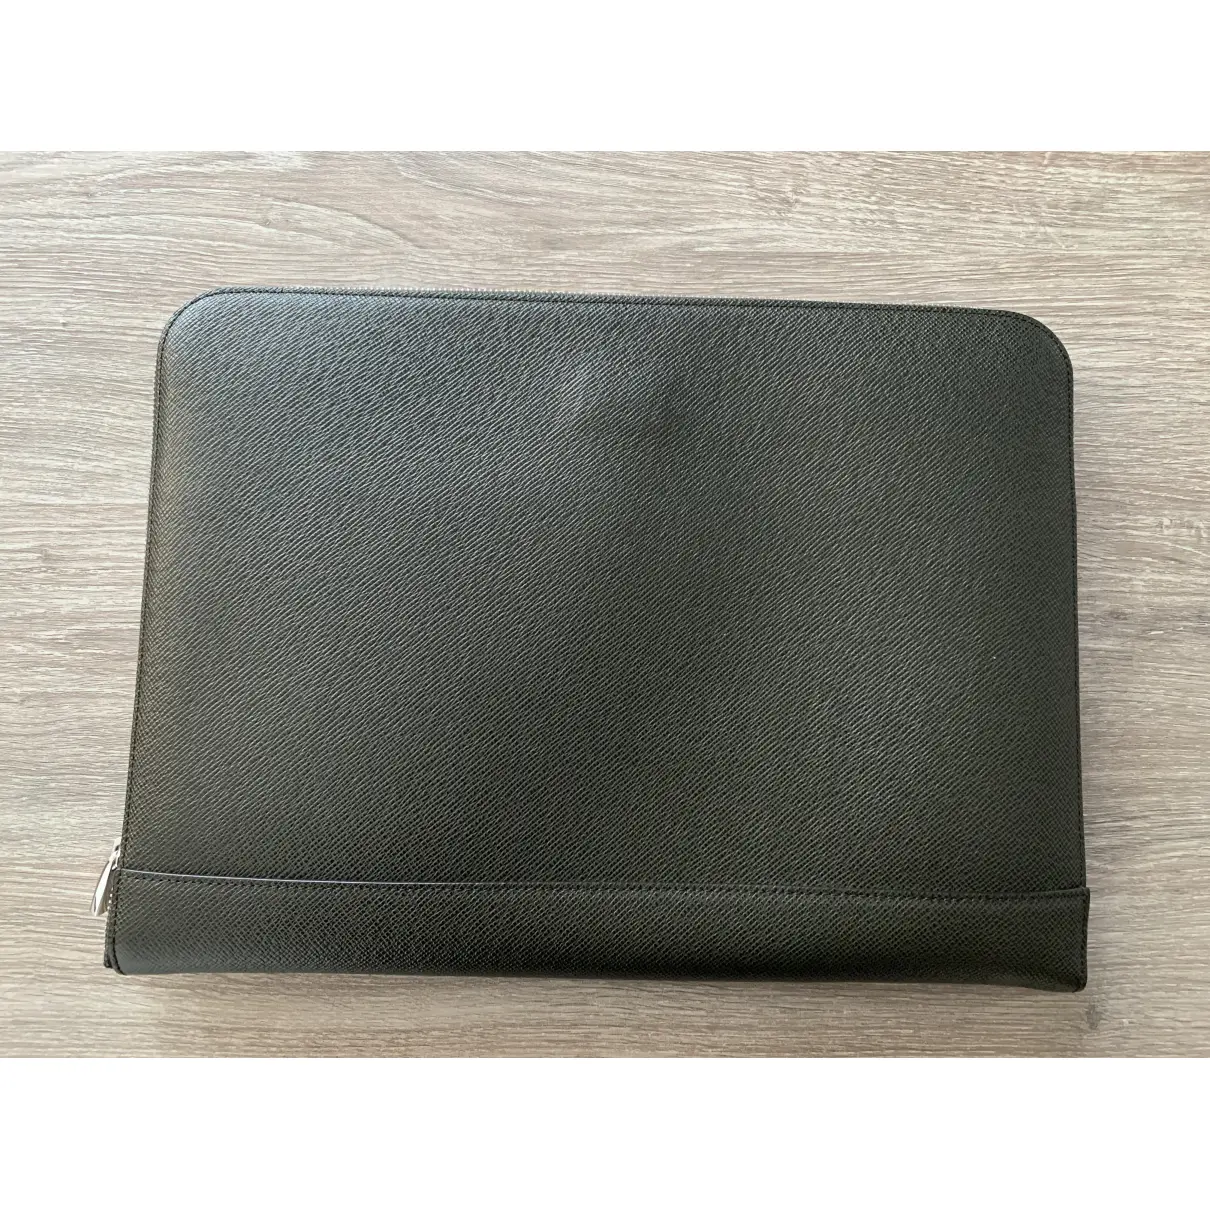 Buy Hugo Boss Leather bag online